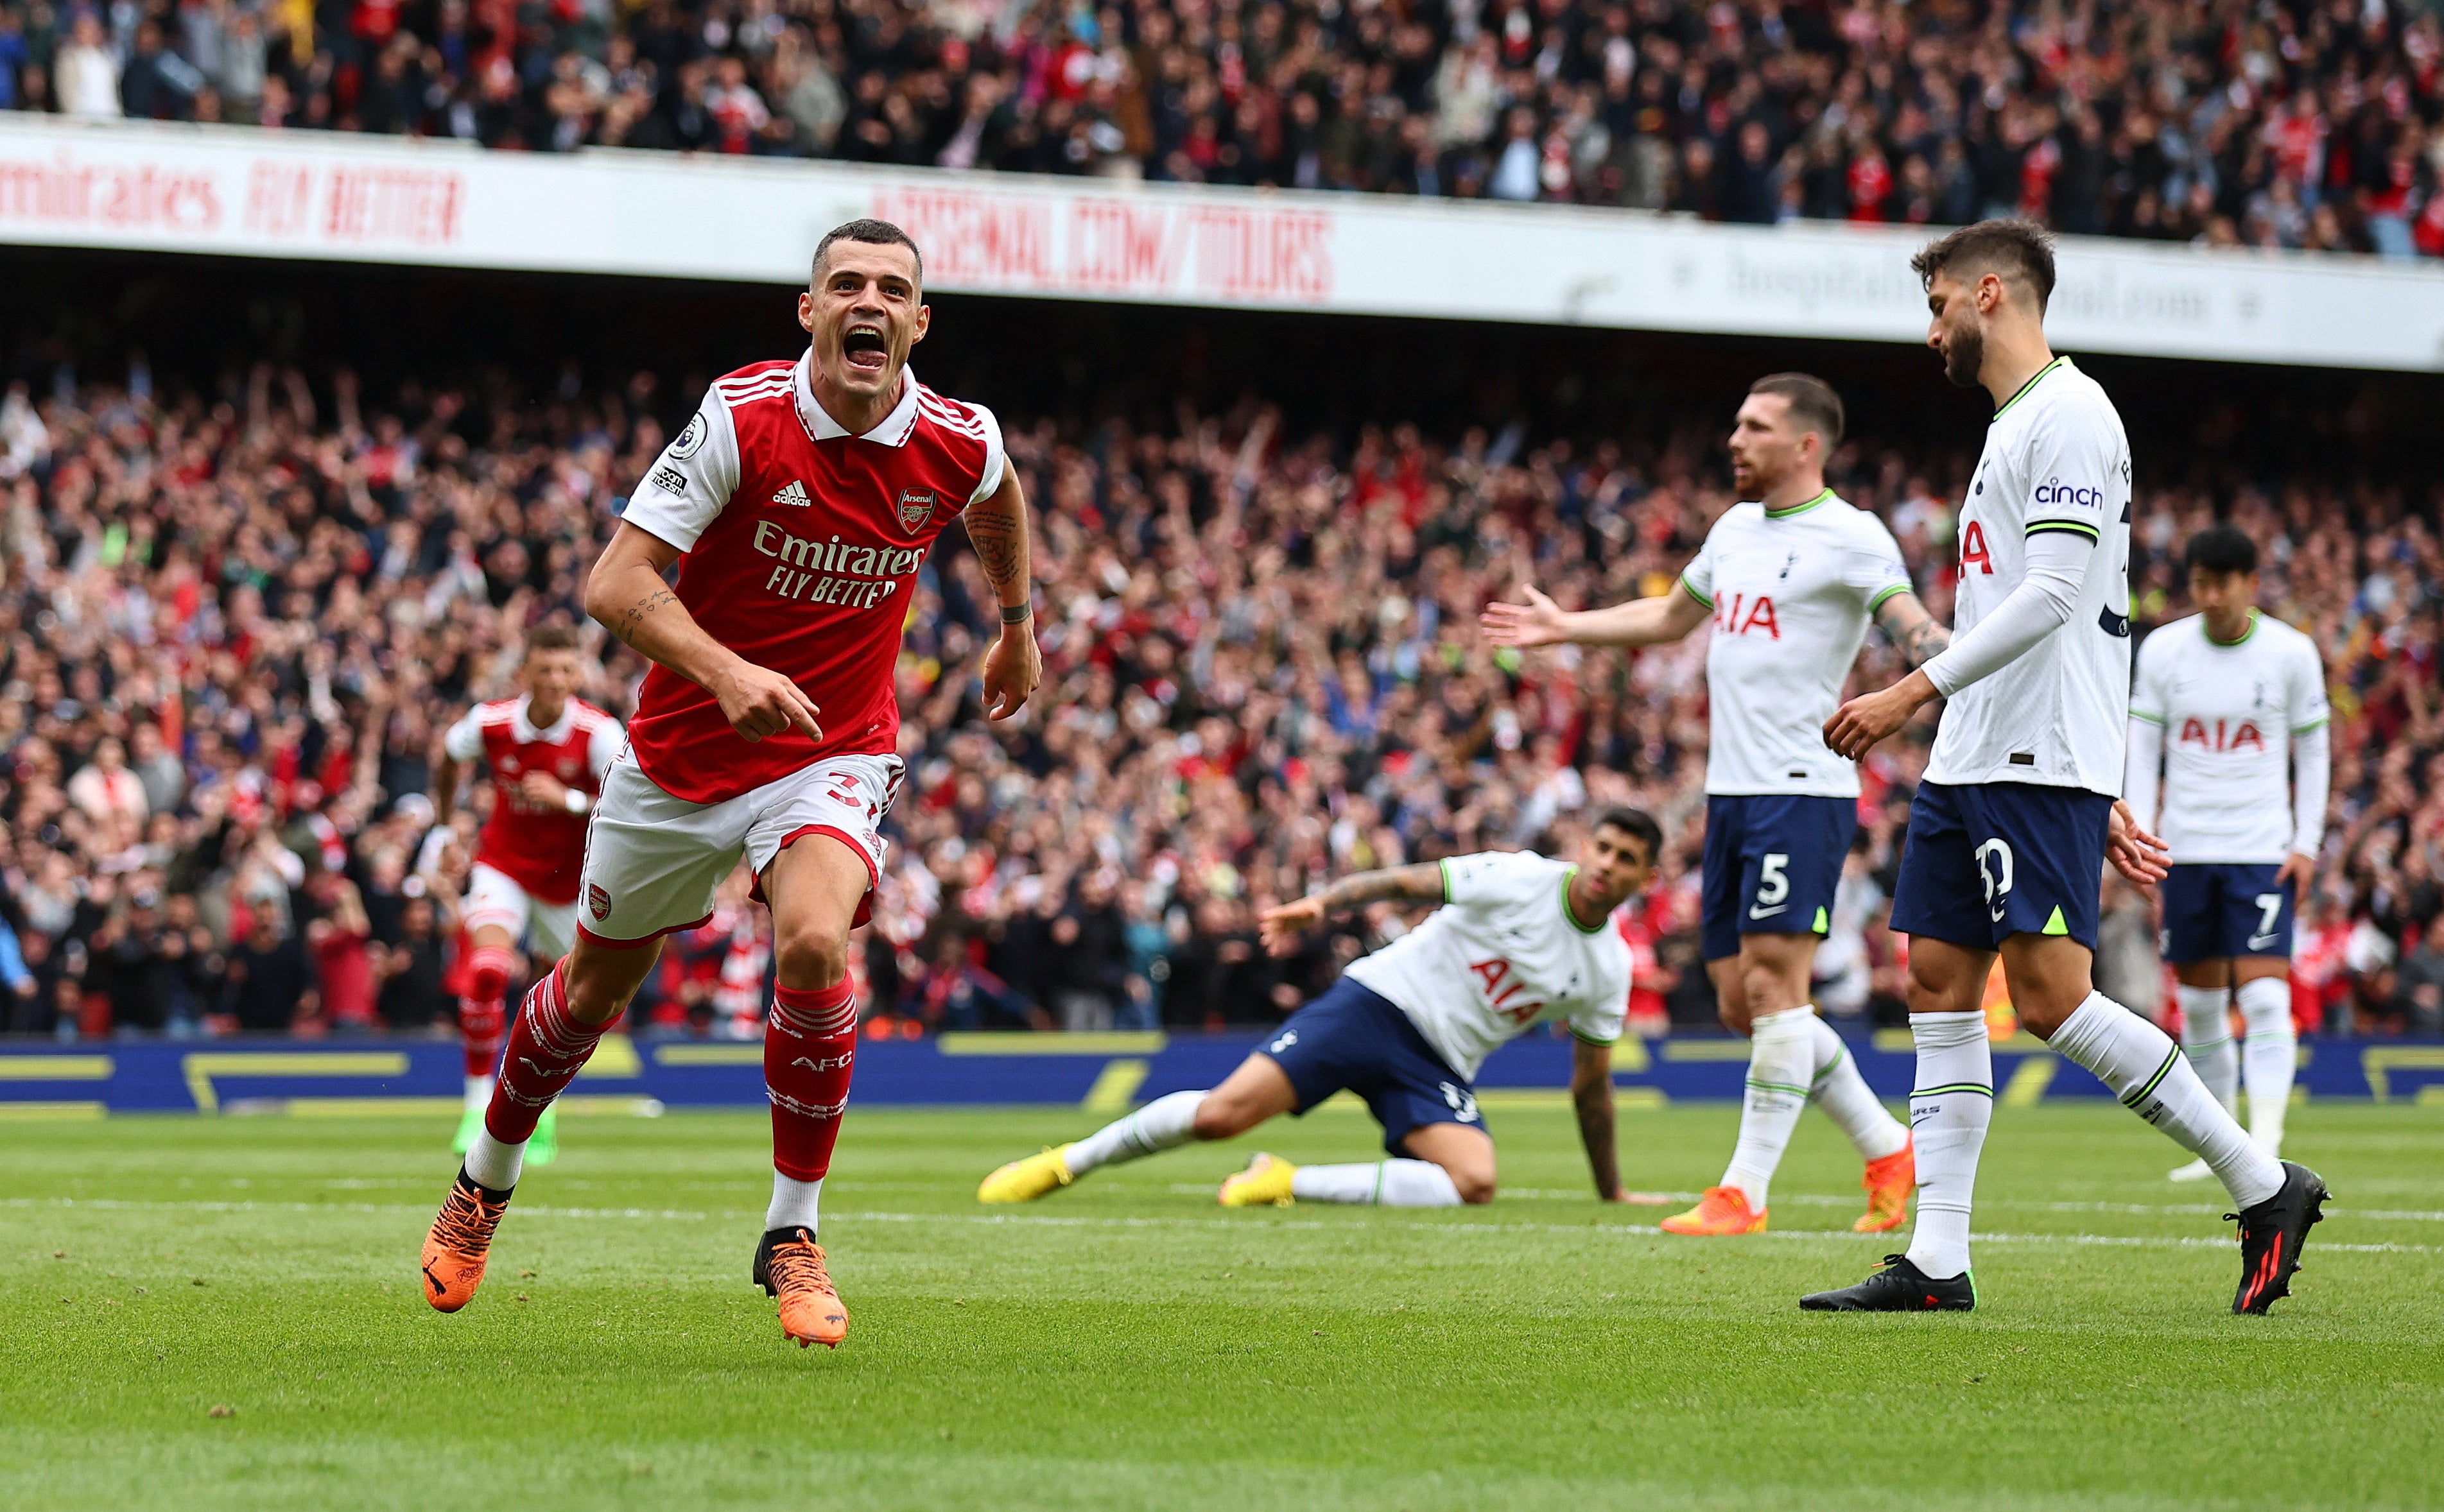 Granit Xhaka celebrates scoring Arsenal’s third goal